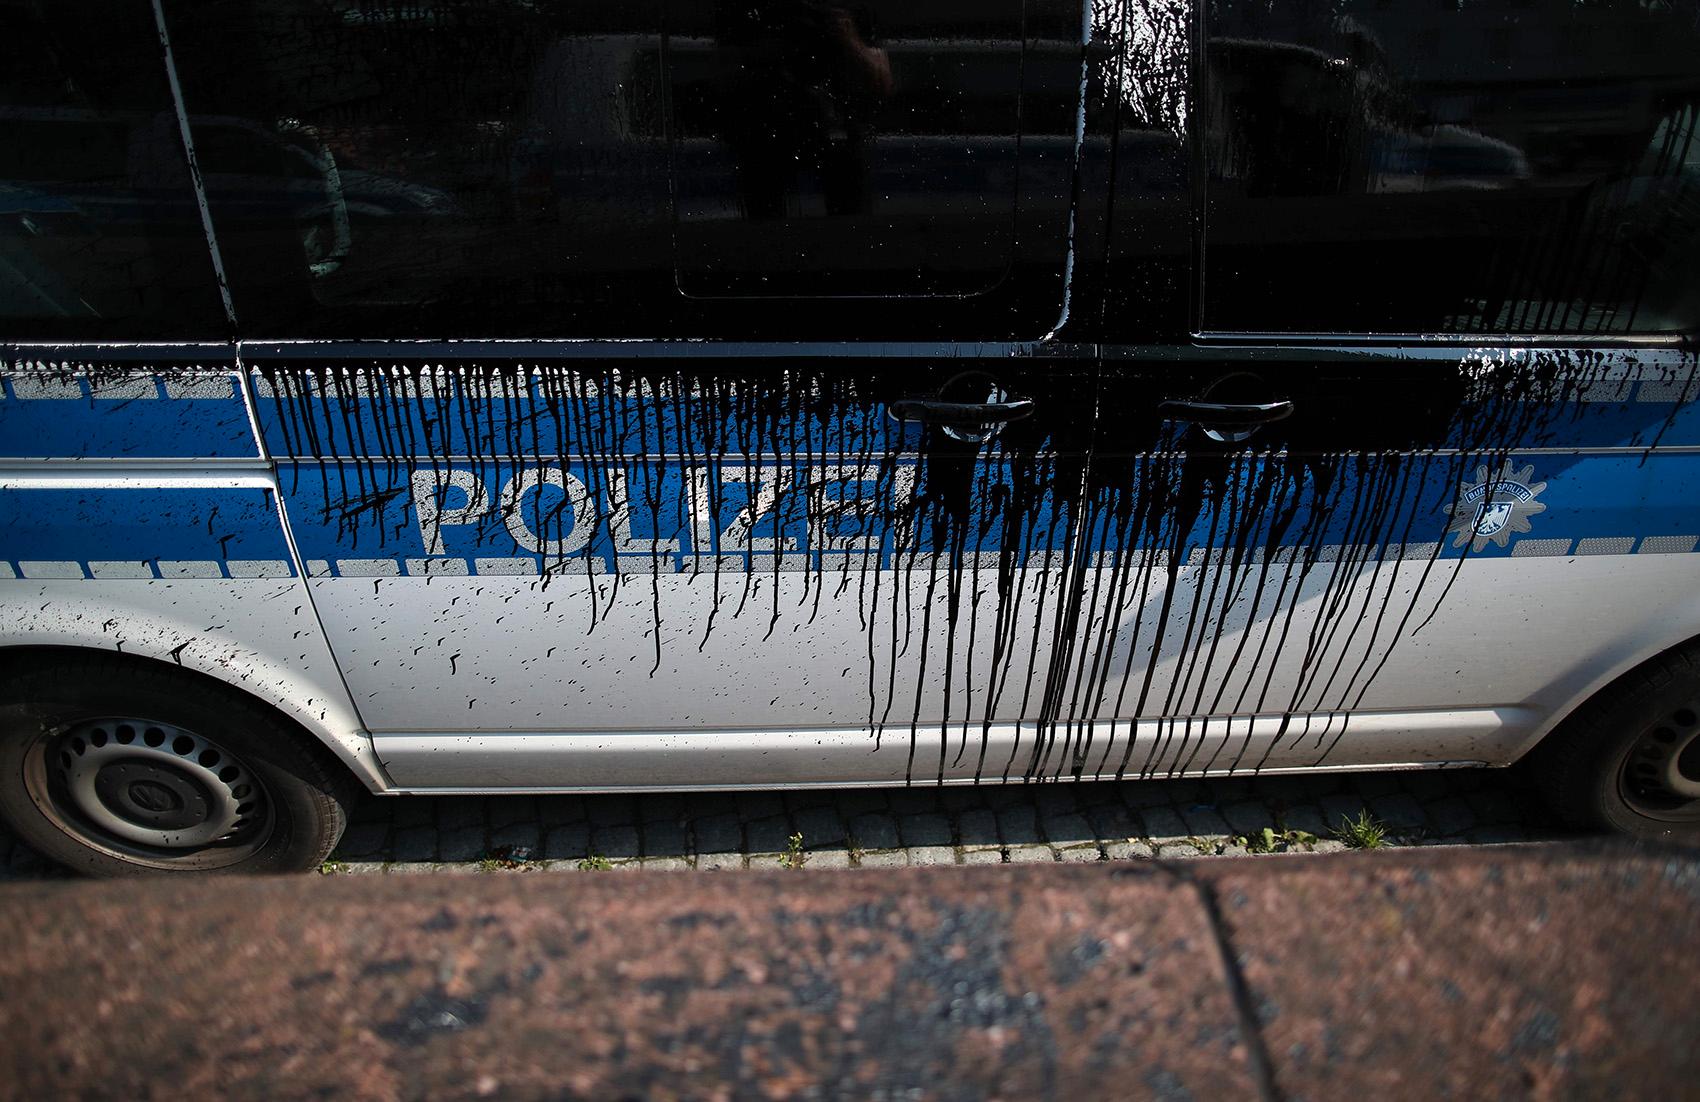 Polisbil attackerad med svart färg i Hamburg.